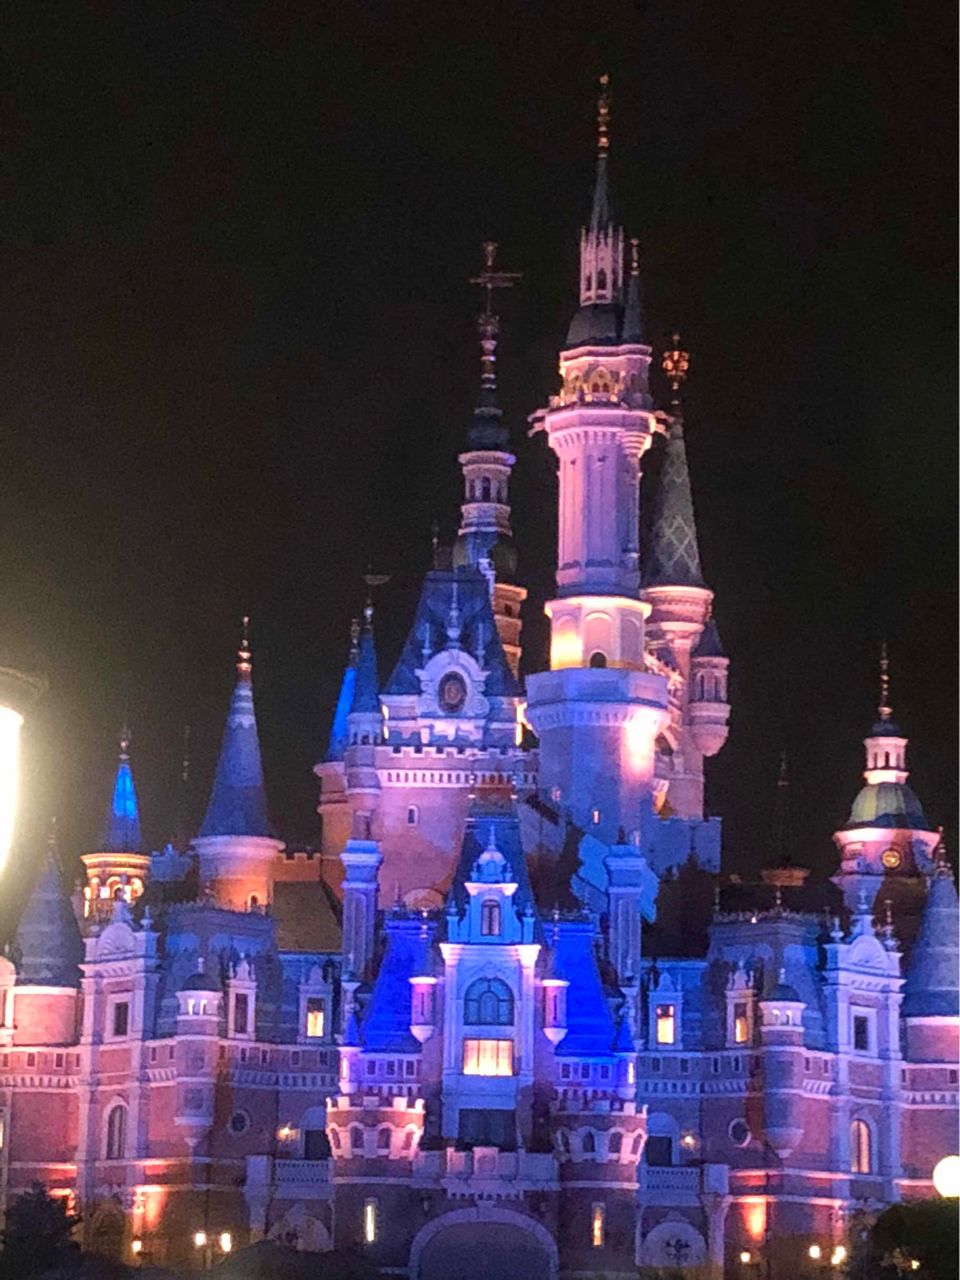 上海迪士尼乐园,现实中的童话城堡,难道不美吗?